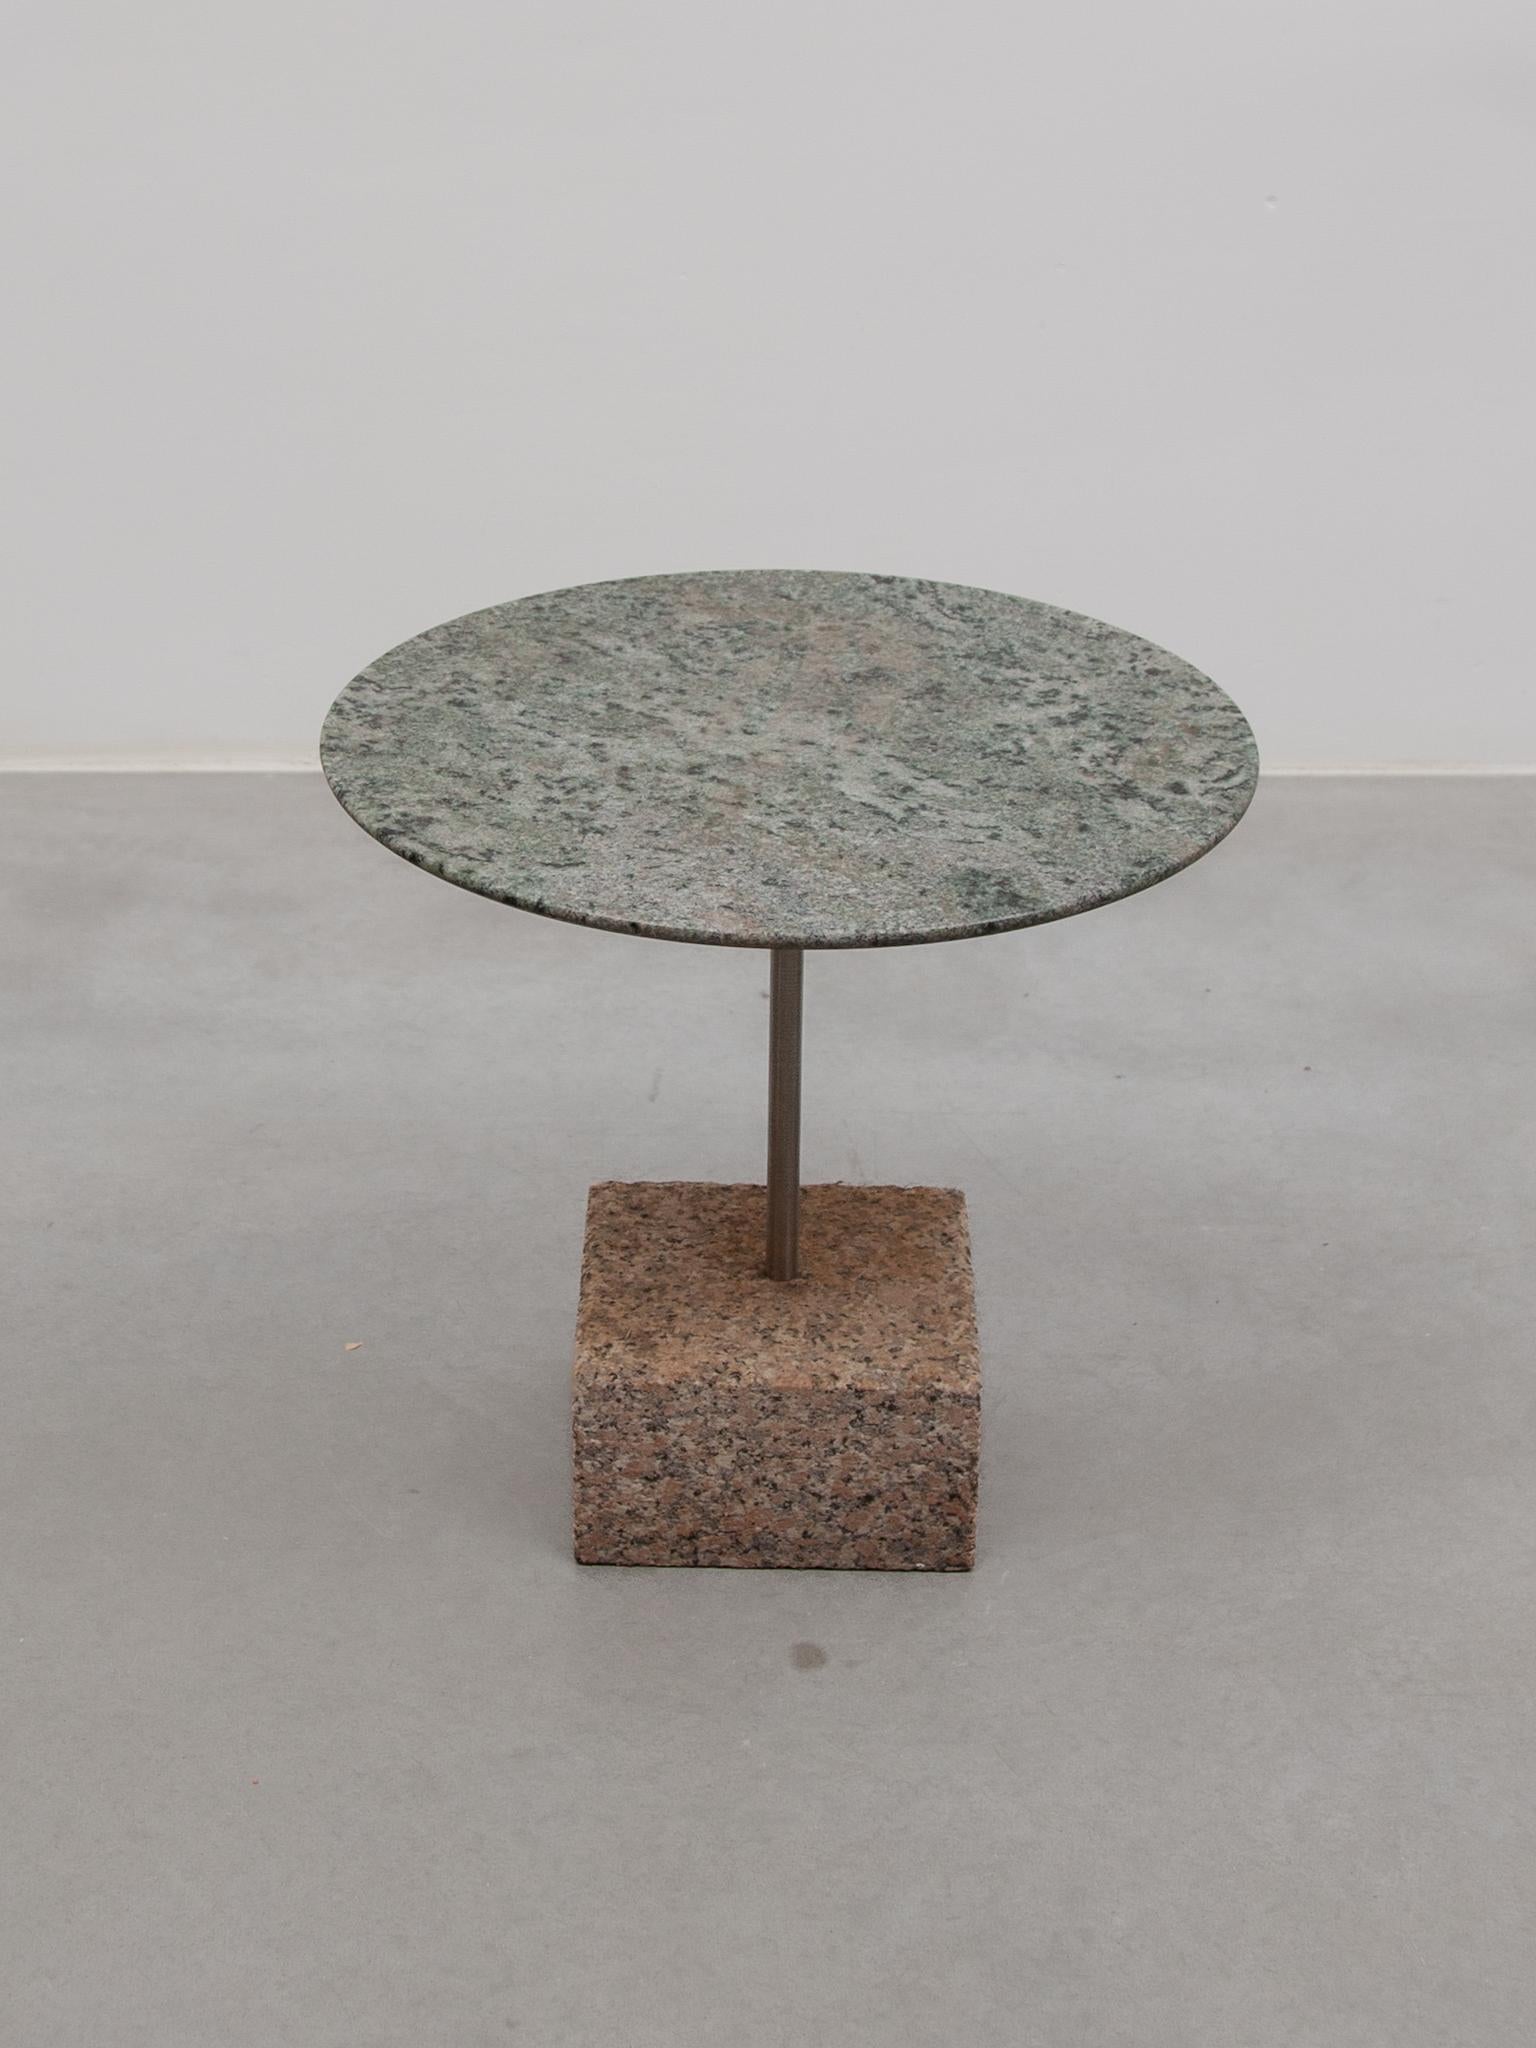 Ein schöner brutalistischer kleiner Beistelltisch mit einer Platte aus grün geädertem Naturstein und einem Sockel aus grauem Marmor.